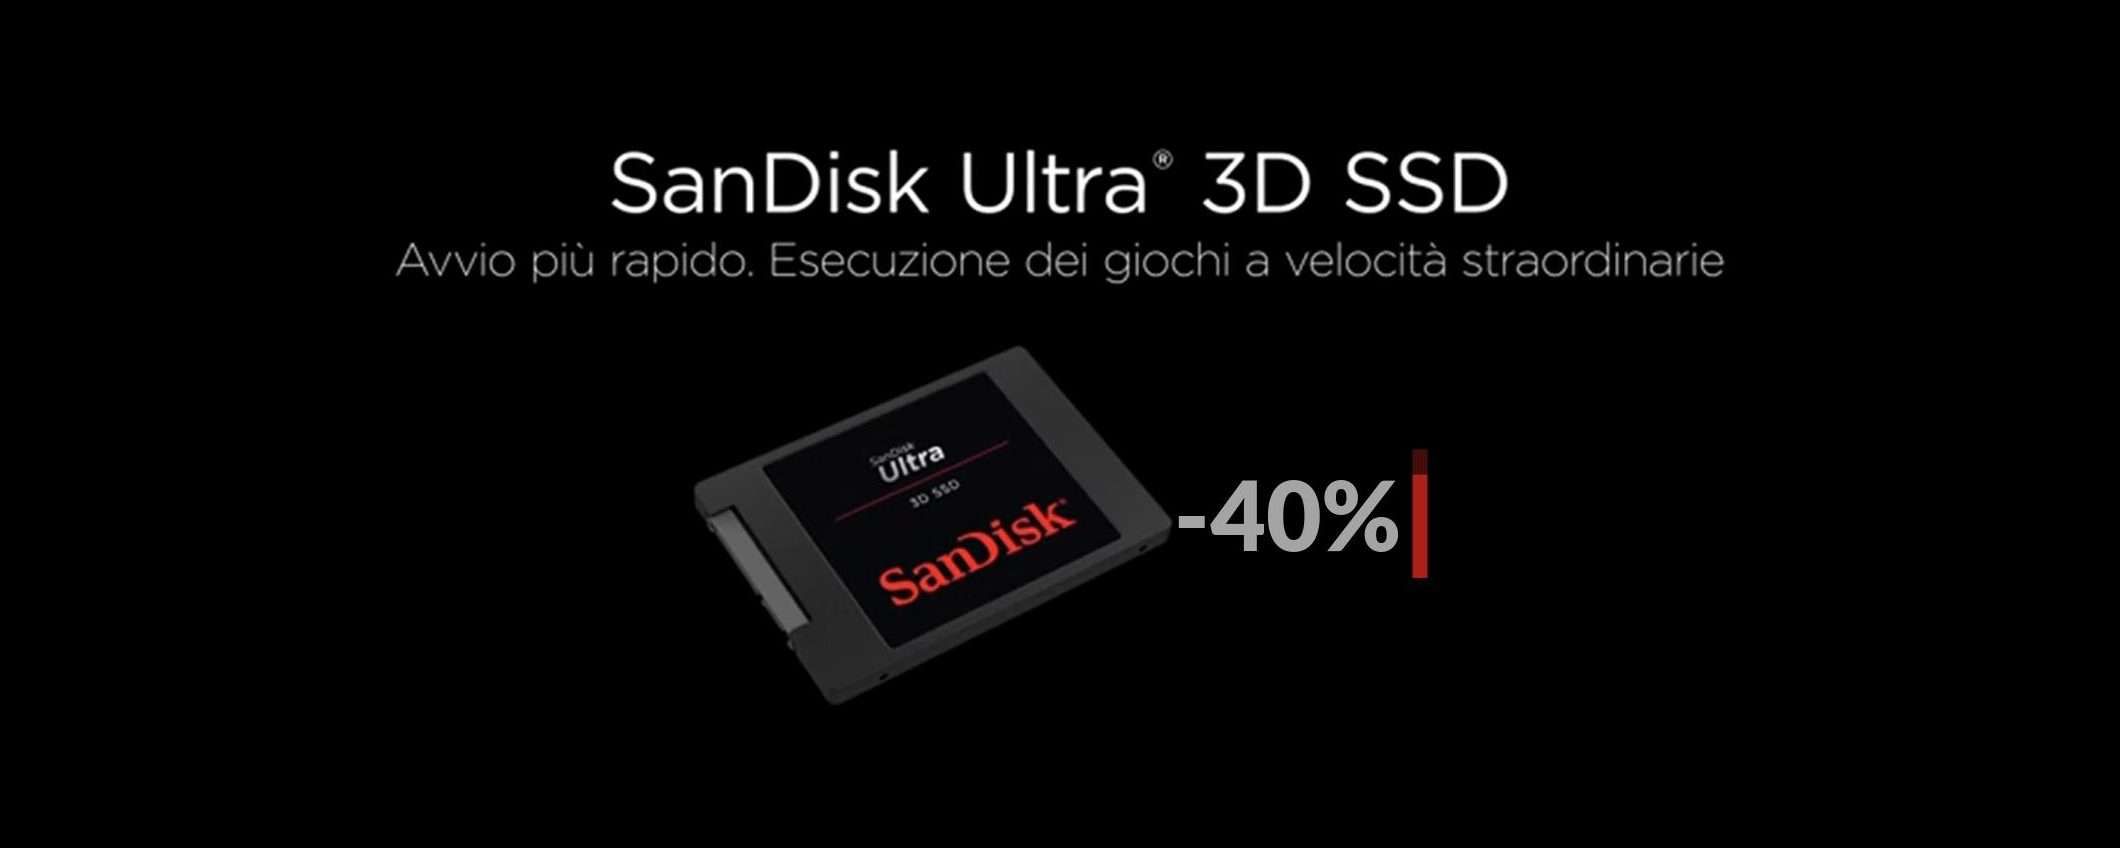 SSD SanDisk 2TB, il prezzo CROLLA a soli 156€: possibile errore